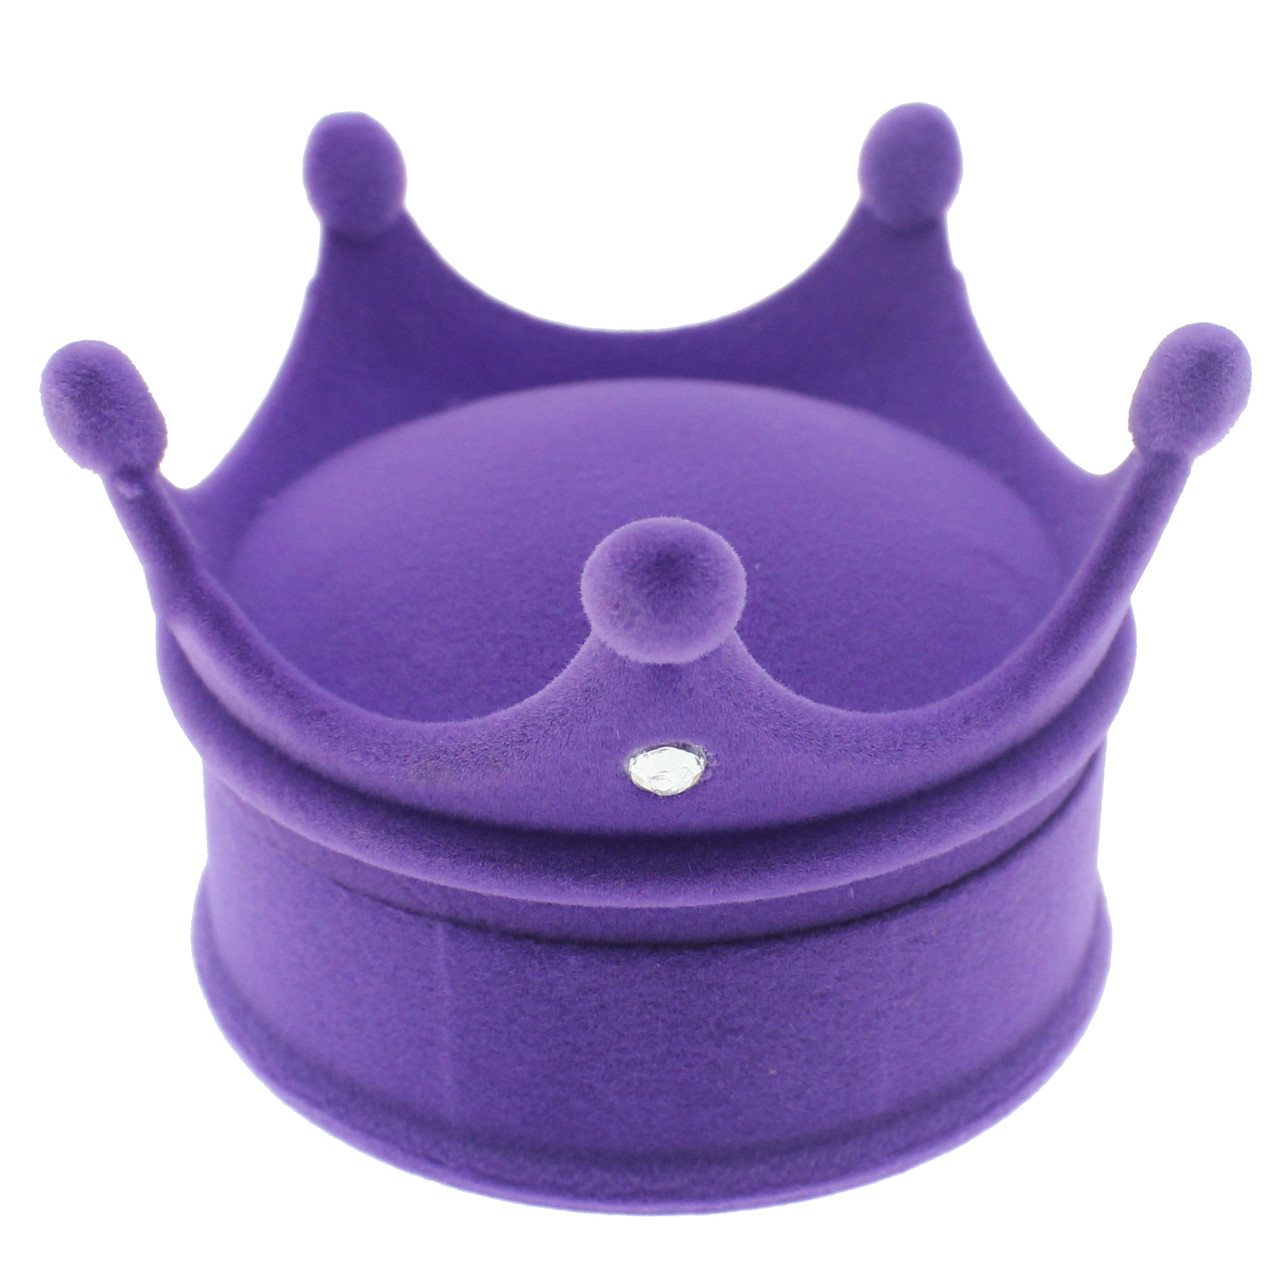 Футляр корона фиолетовая с камнями бархат для ювелирных изделий под кольцо или украшения размер 6,5Х6,5Х4,5см